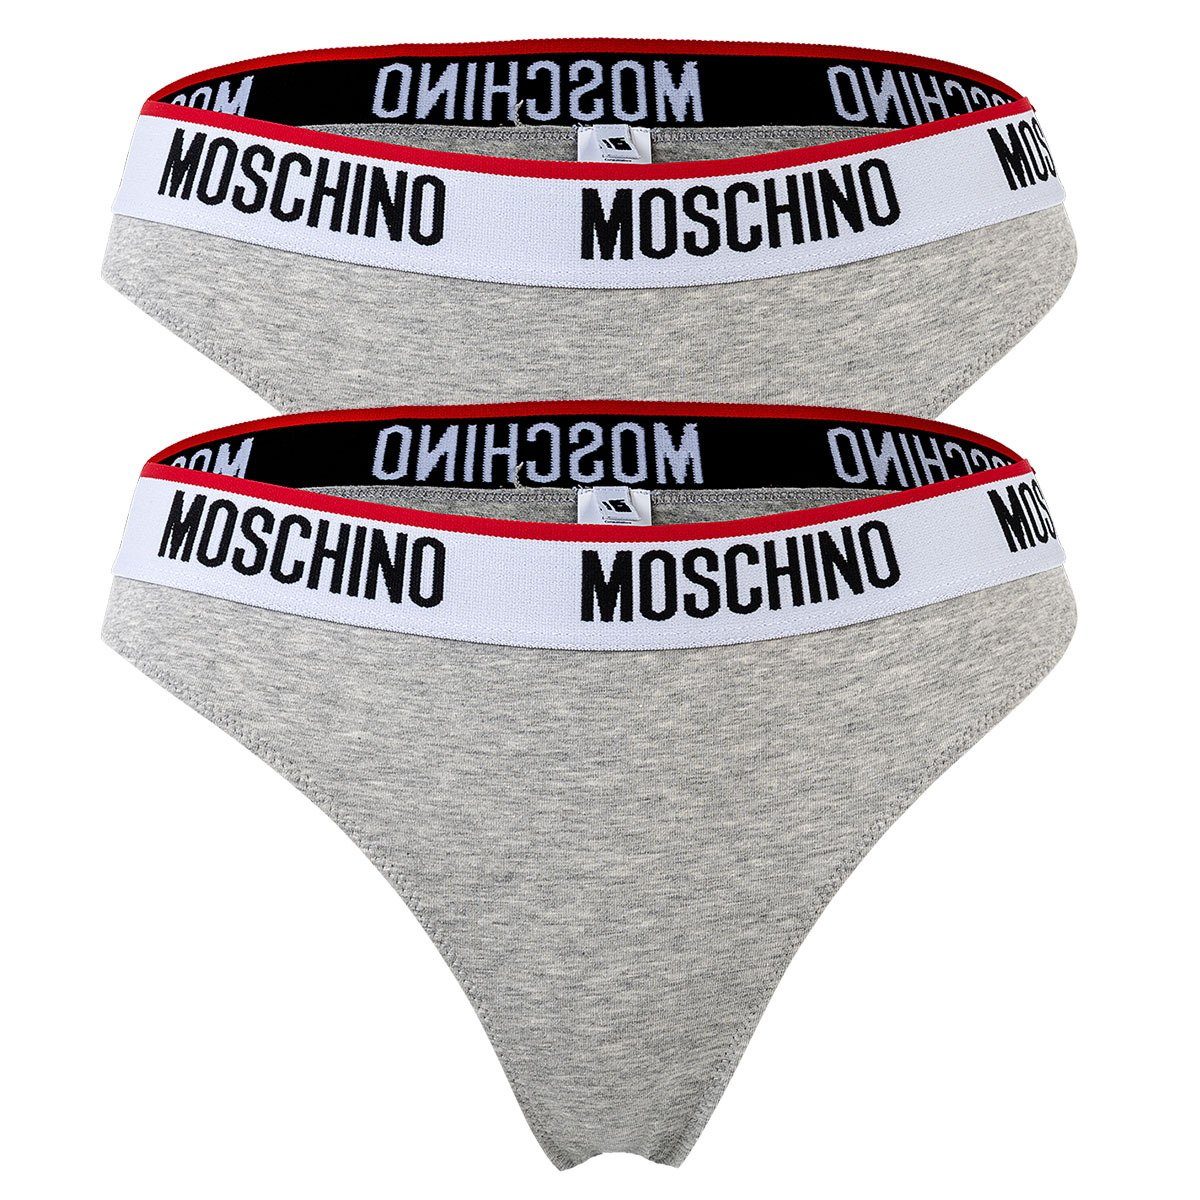 Moschino Slip Damen Slips 2er Pack - Briefs, Unterhose, Cotton Grau meliert | Klassische Slips